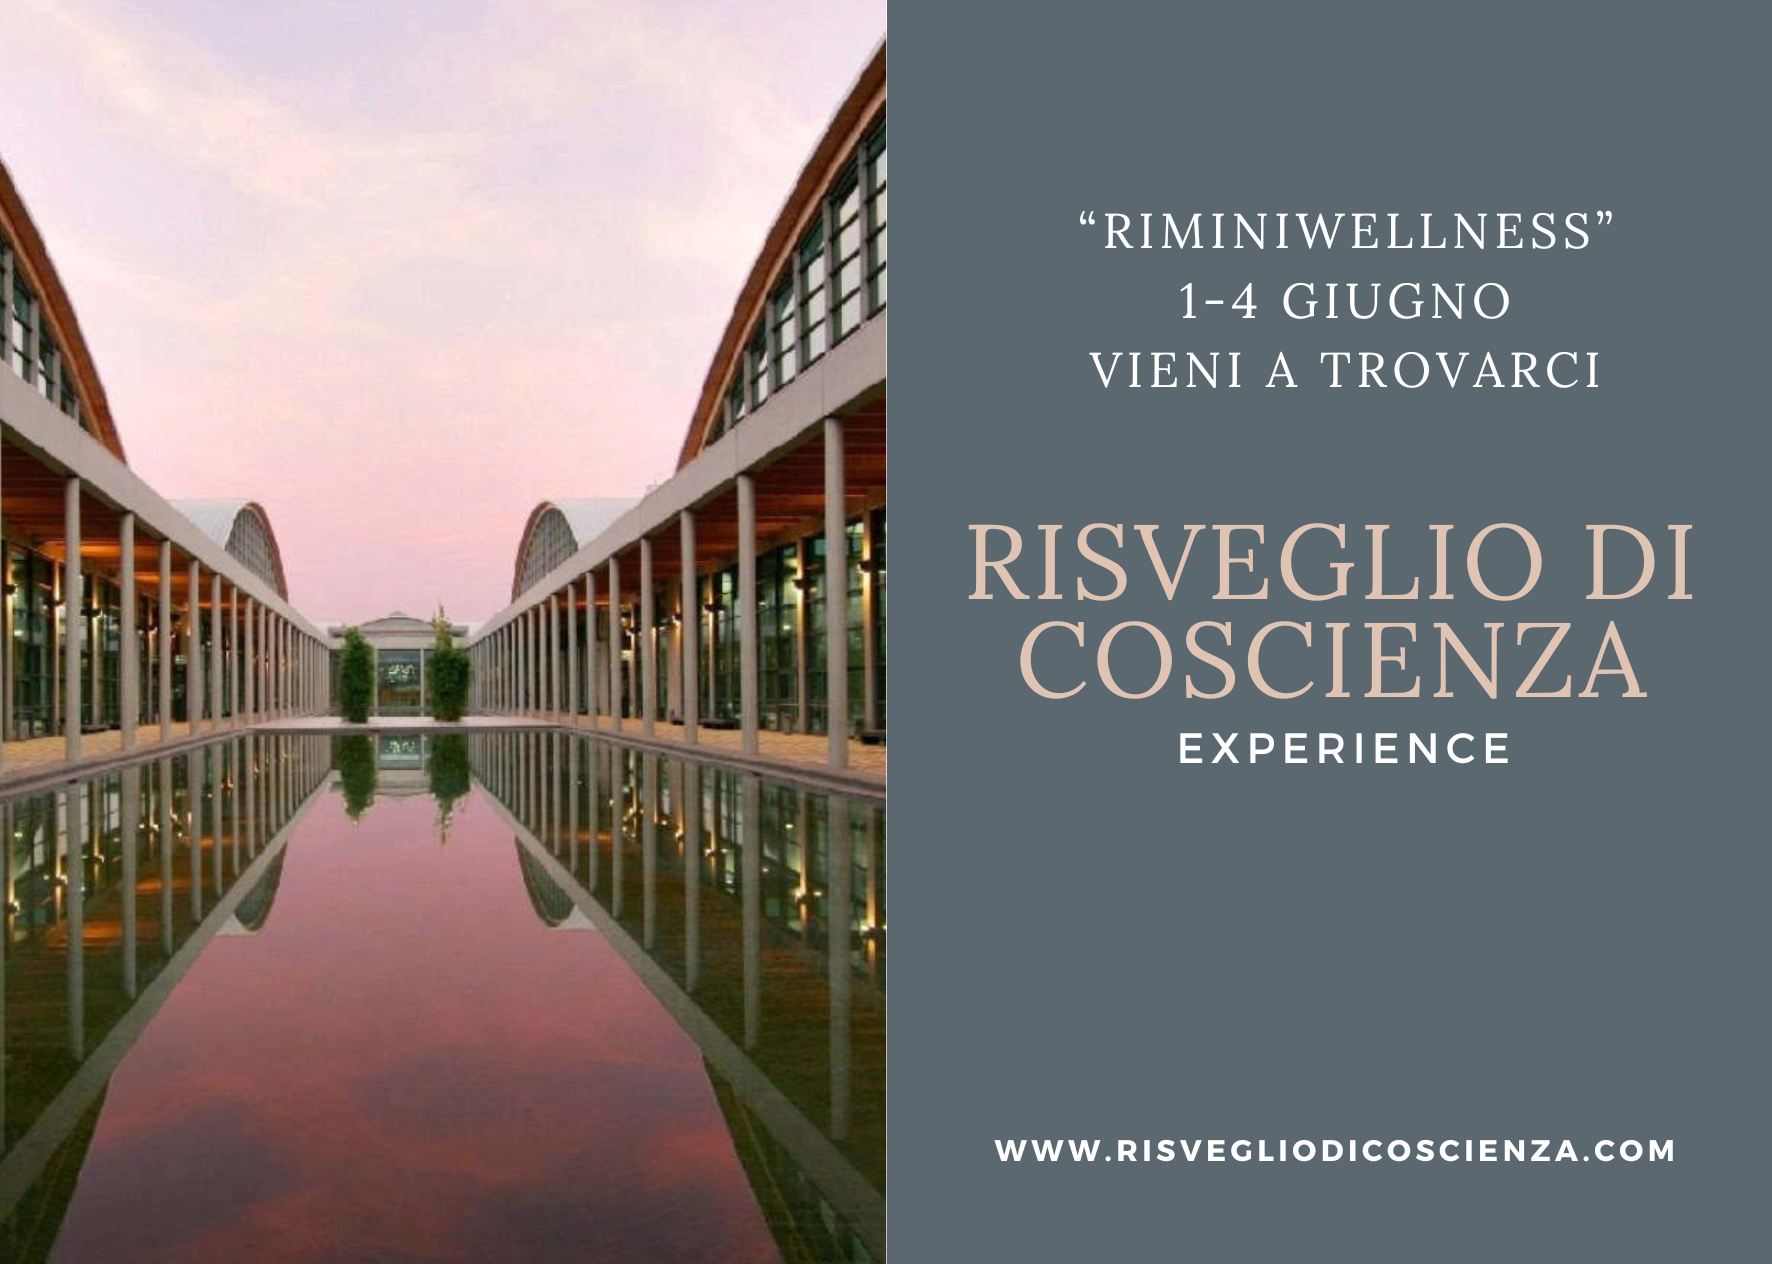 Risveglio di Coscienza Experience a Riminiwellness